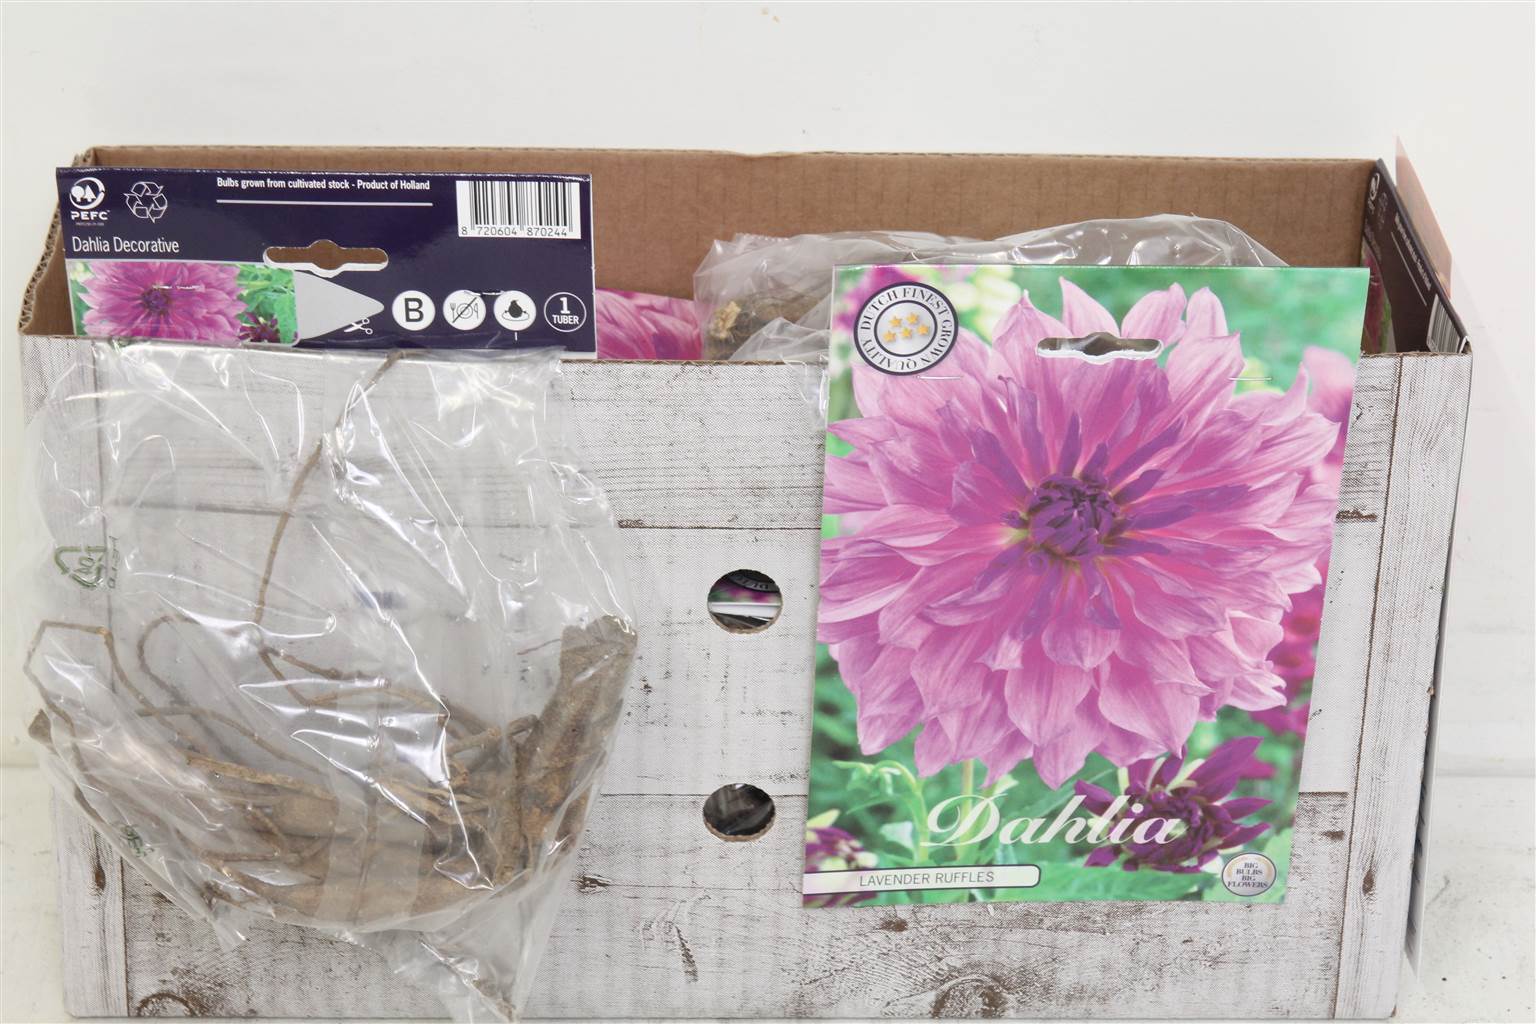 Цветочная луковица Георгин Деко Лавандовые оборки X1 ( Flower bulb Dahlia Deco Lavender Ruffles X1 )